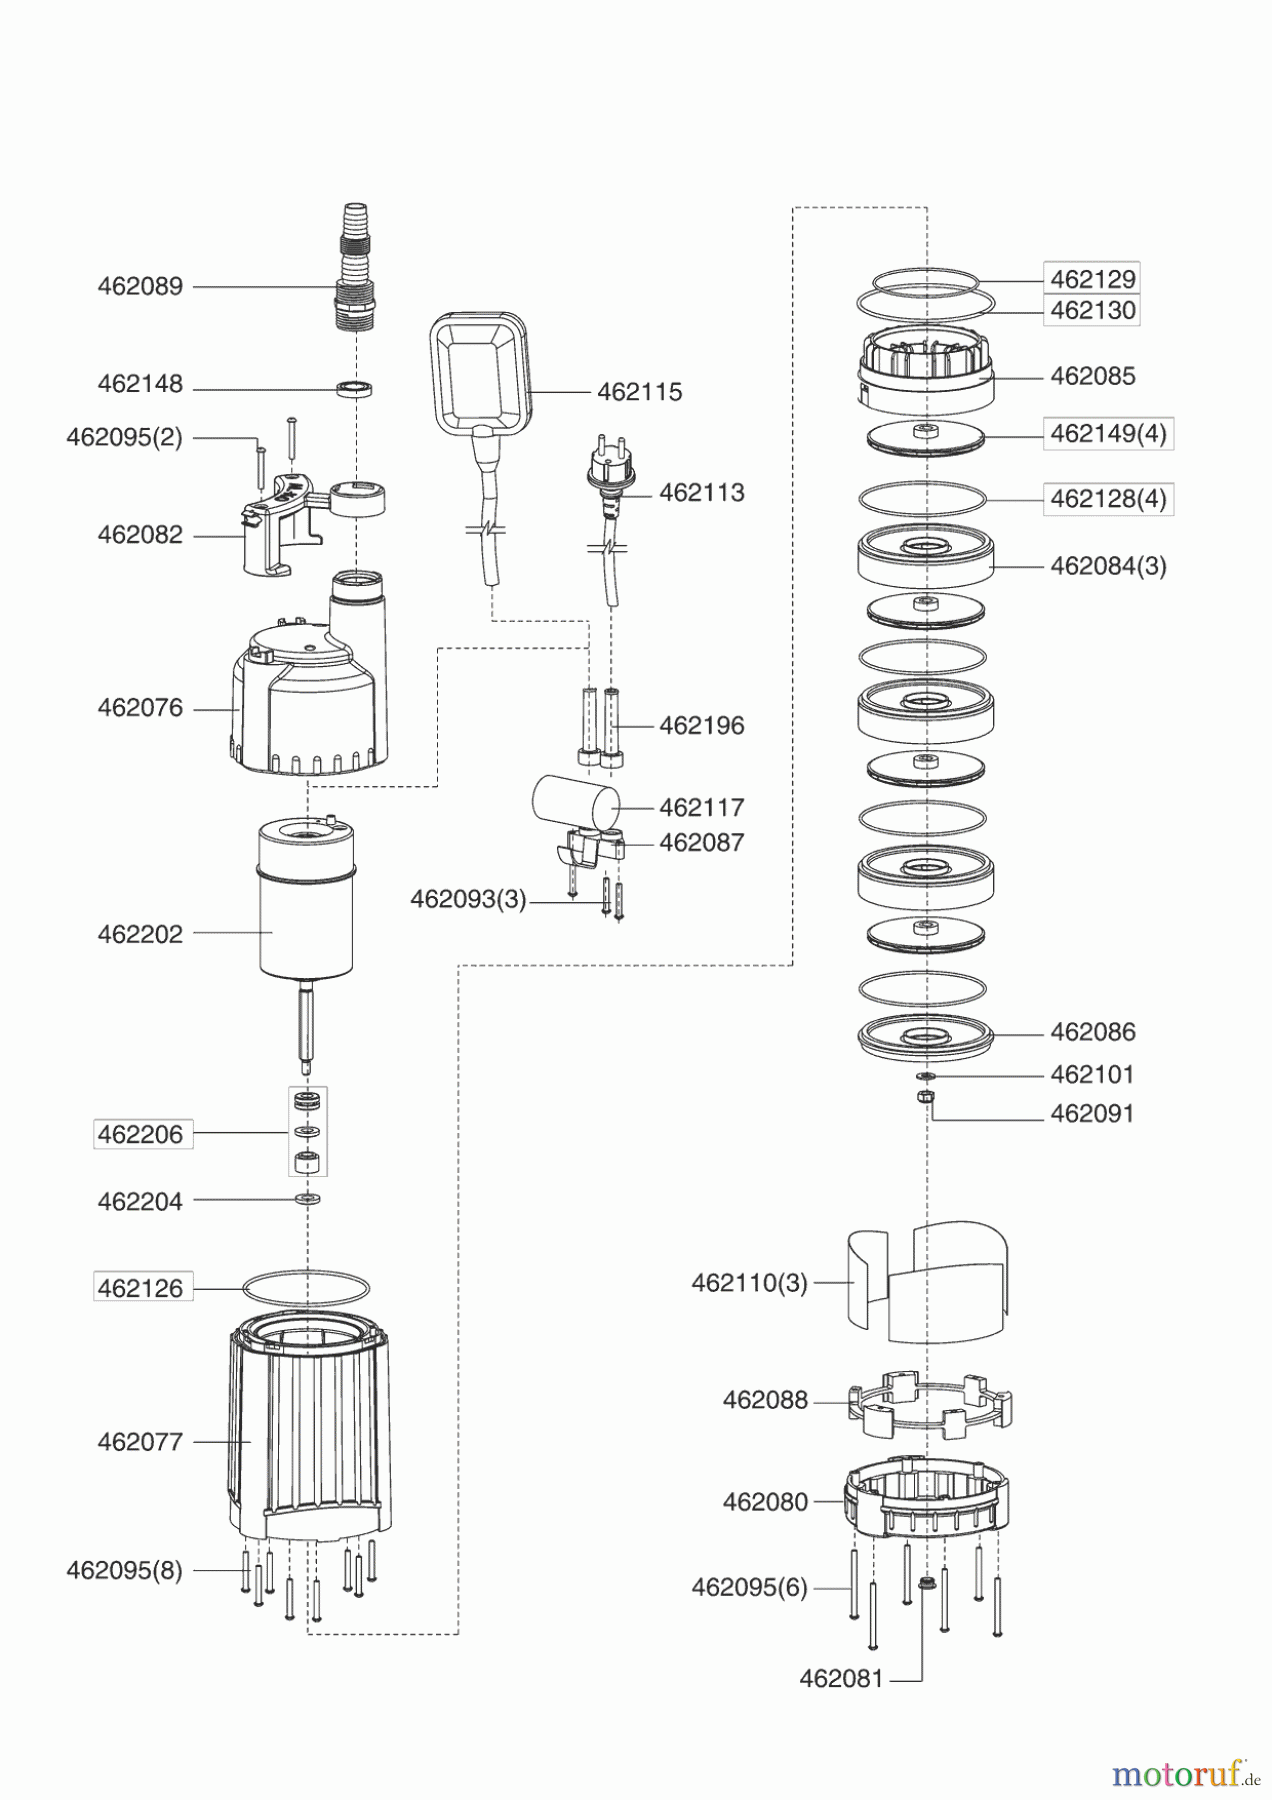  AL-KO Wassertechnik Tauchdruckpumpen TDS 1201-4 Seite 1